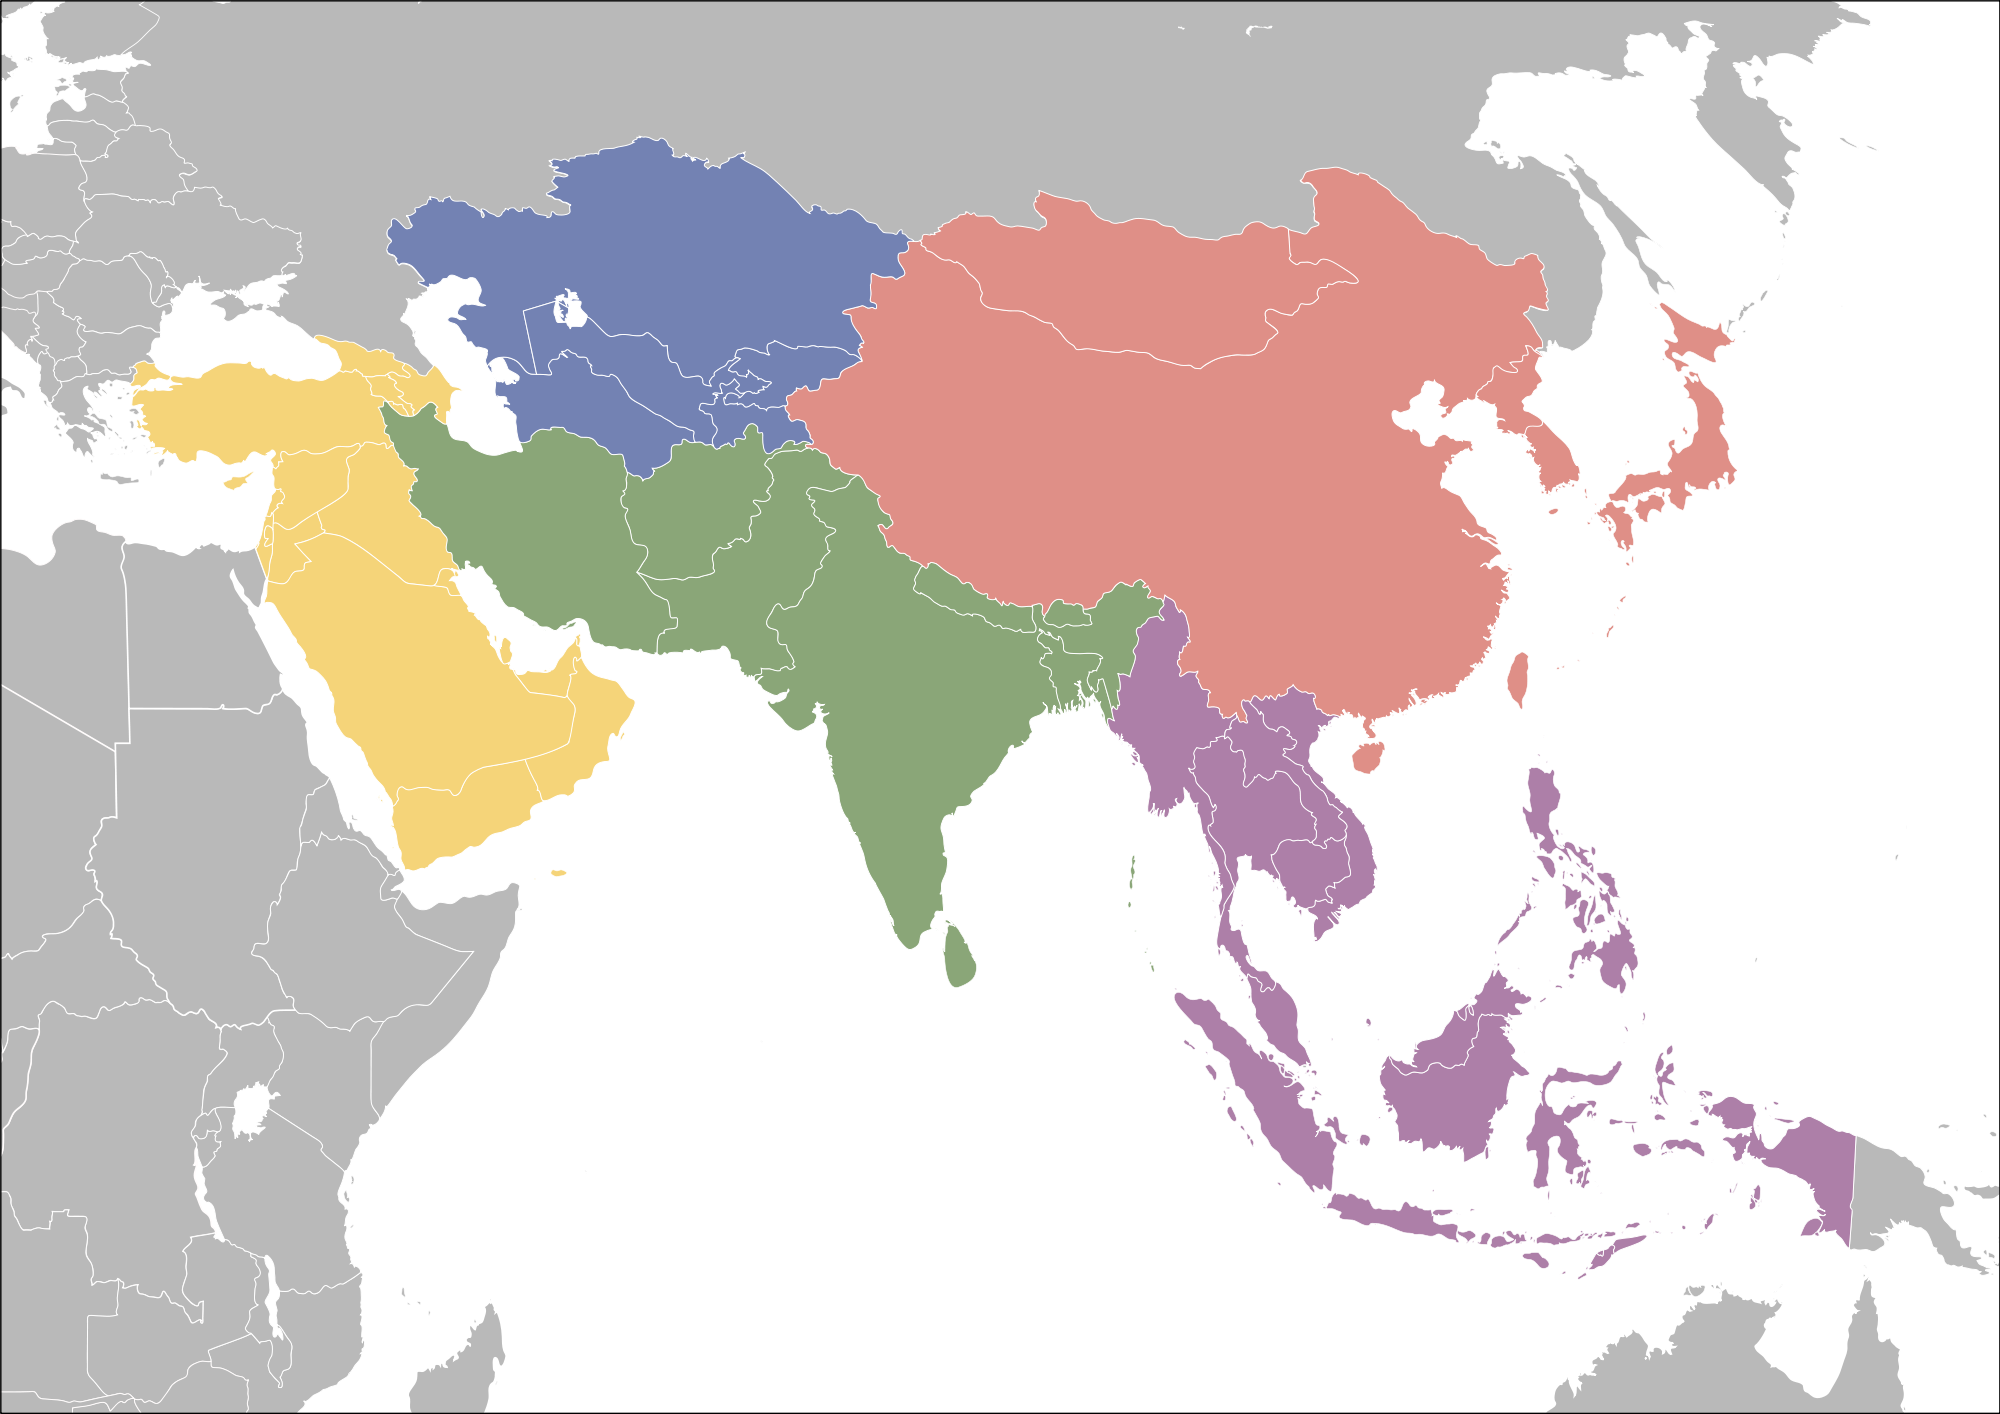 Субрегионы зарубежной Азии. Субрегионы зарубежной Азии Восточной Южной Юго Восточной Азии. Субрегионы зарубежной Азии Южная Азия. Регионы Южная Азия Юго-Западная Азия.